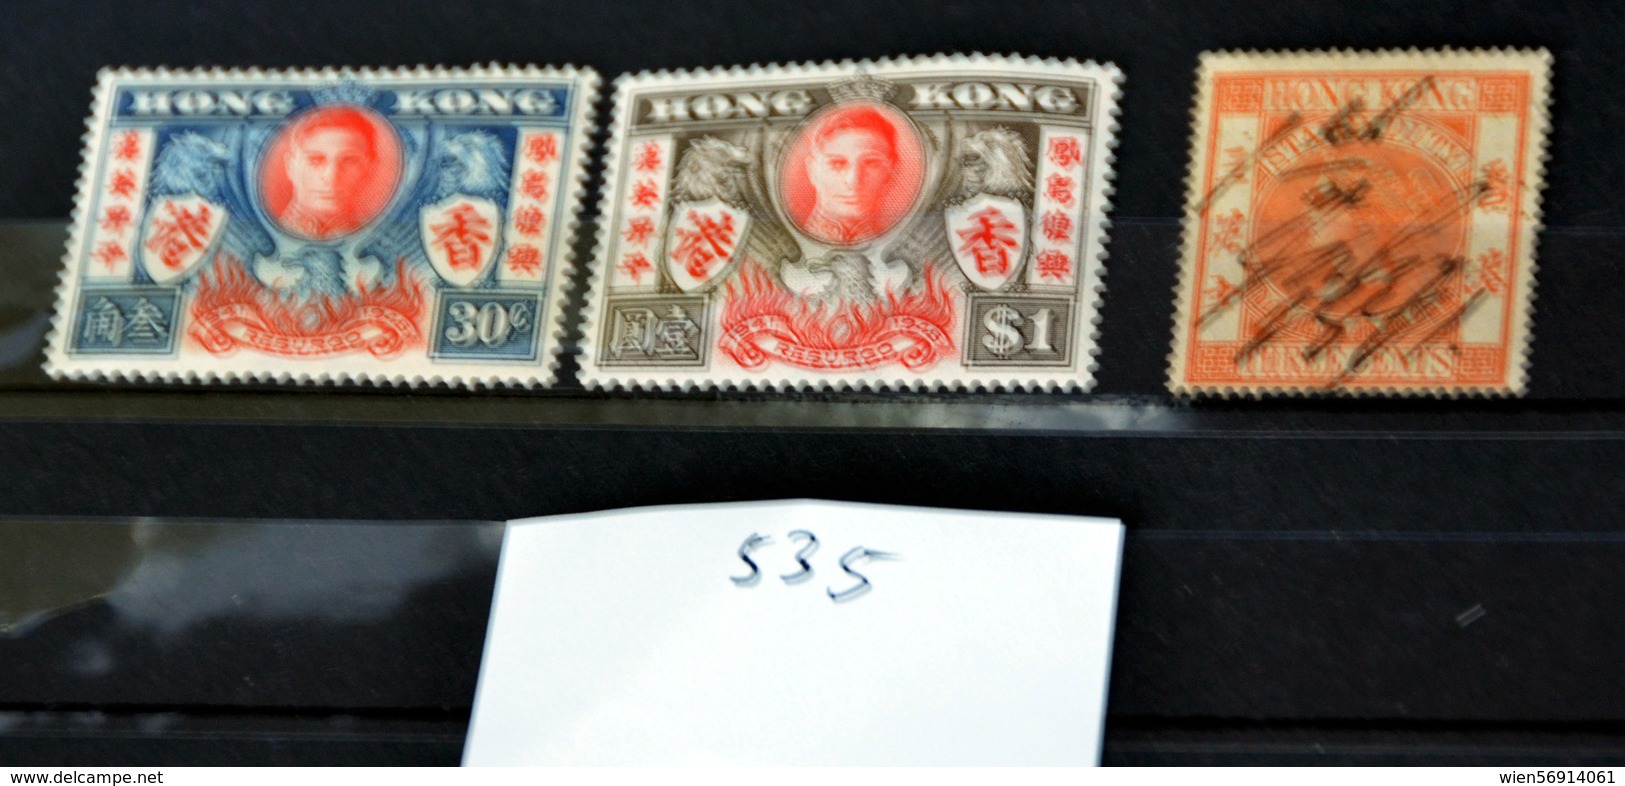 535 China Hong Kong - Unused Stamps